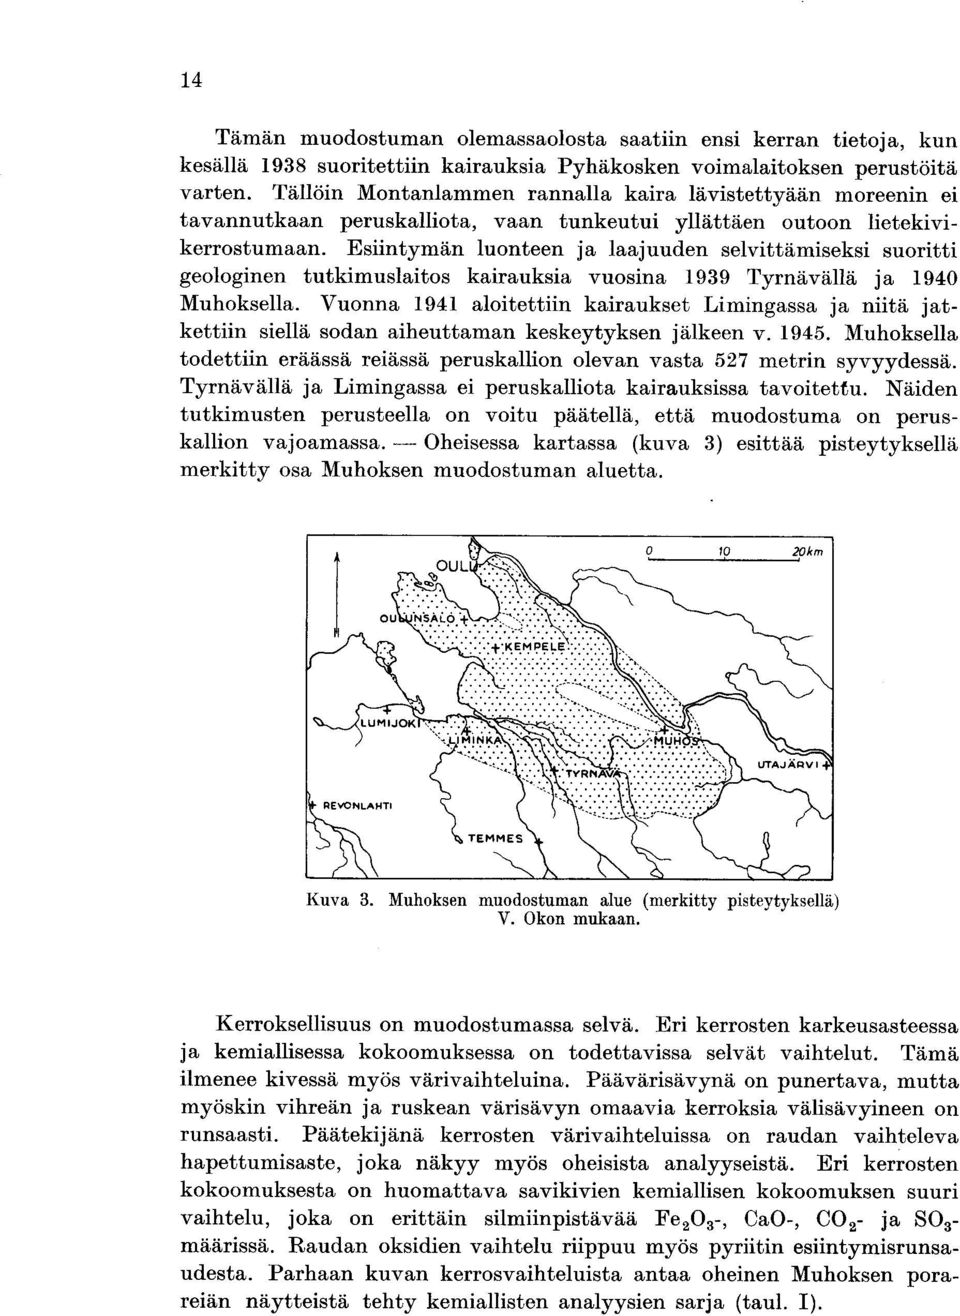 Esiintymän luonteen ja laajuuden selvittämiseksi suoritti geologinen tutkimuslaitos kairauksia vuosina 1939 Tyrnävällä ja 1940 Muhoksella.